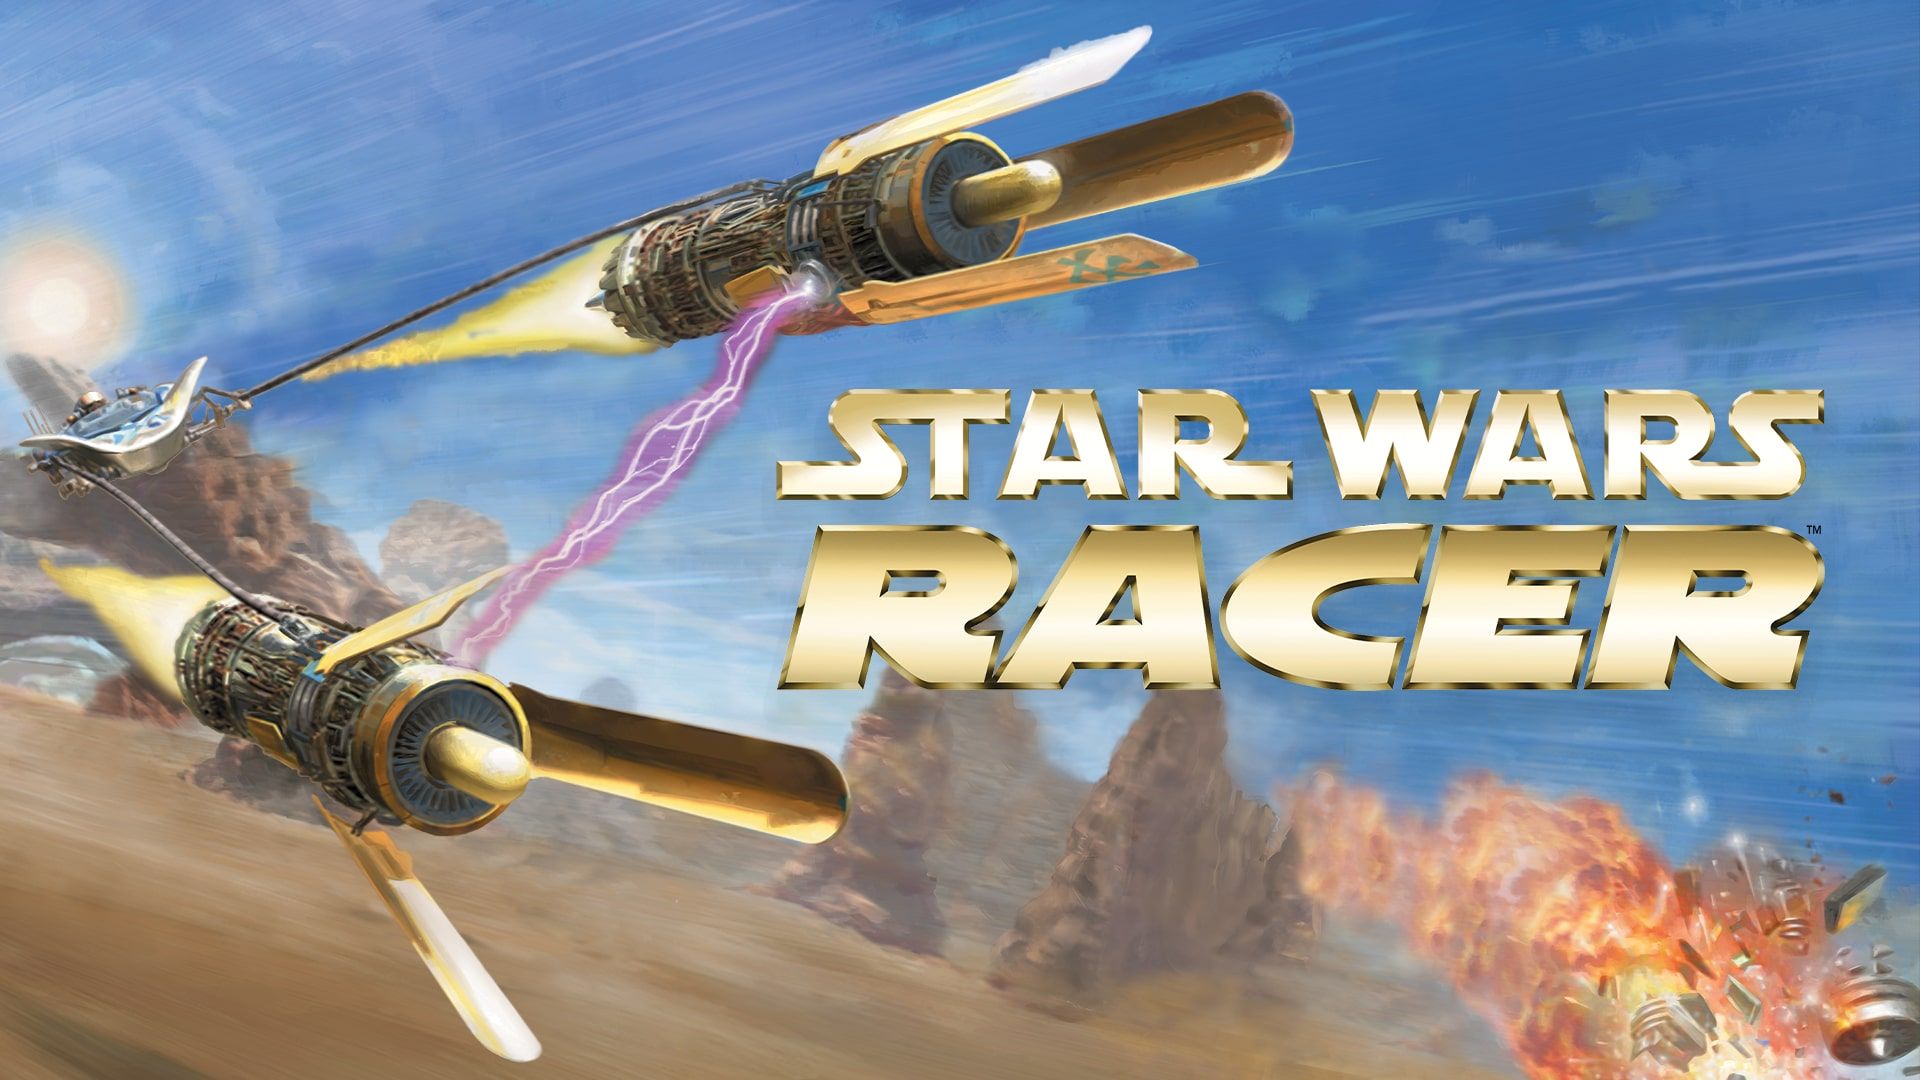 Star Wars Episode I: Racer cover image